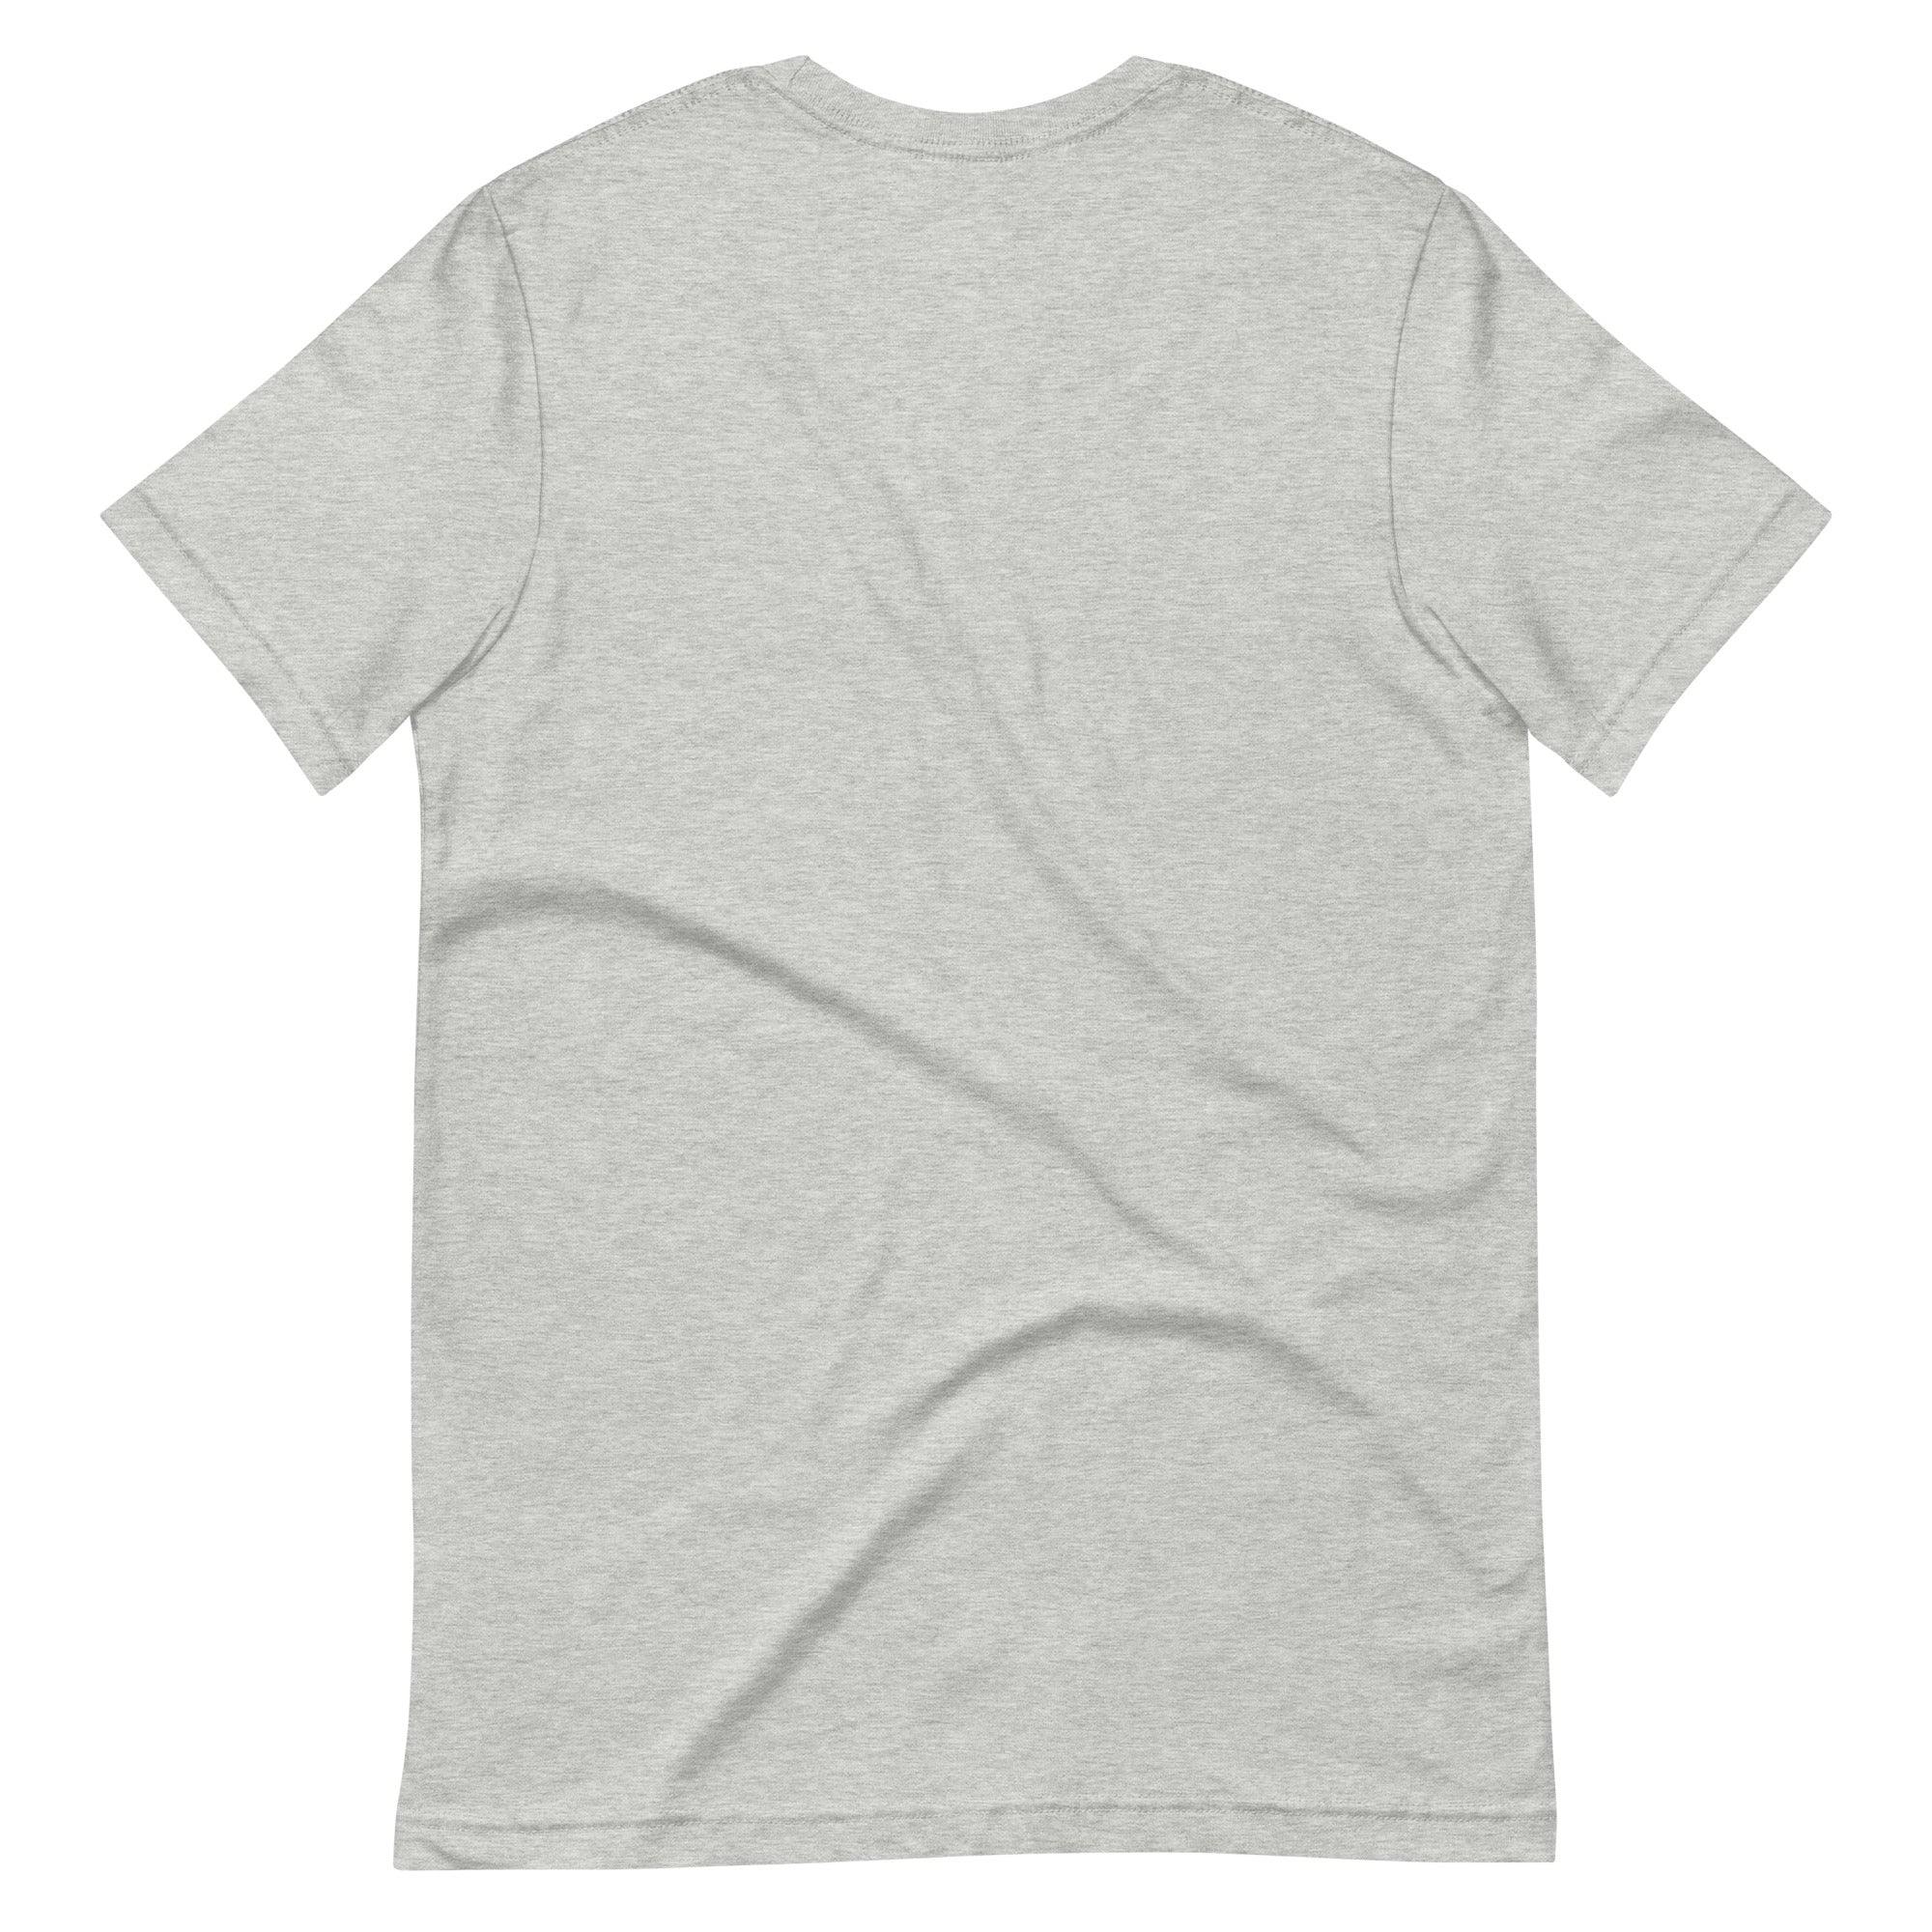 Arches T-Shirt (Grey) - Potrero Hill | San Francisco, CA